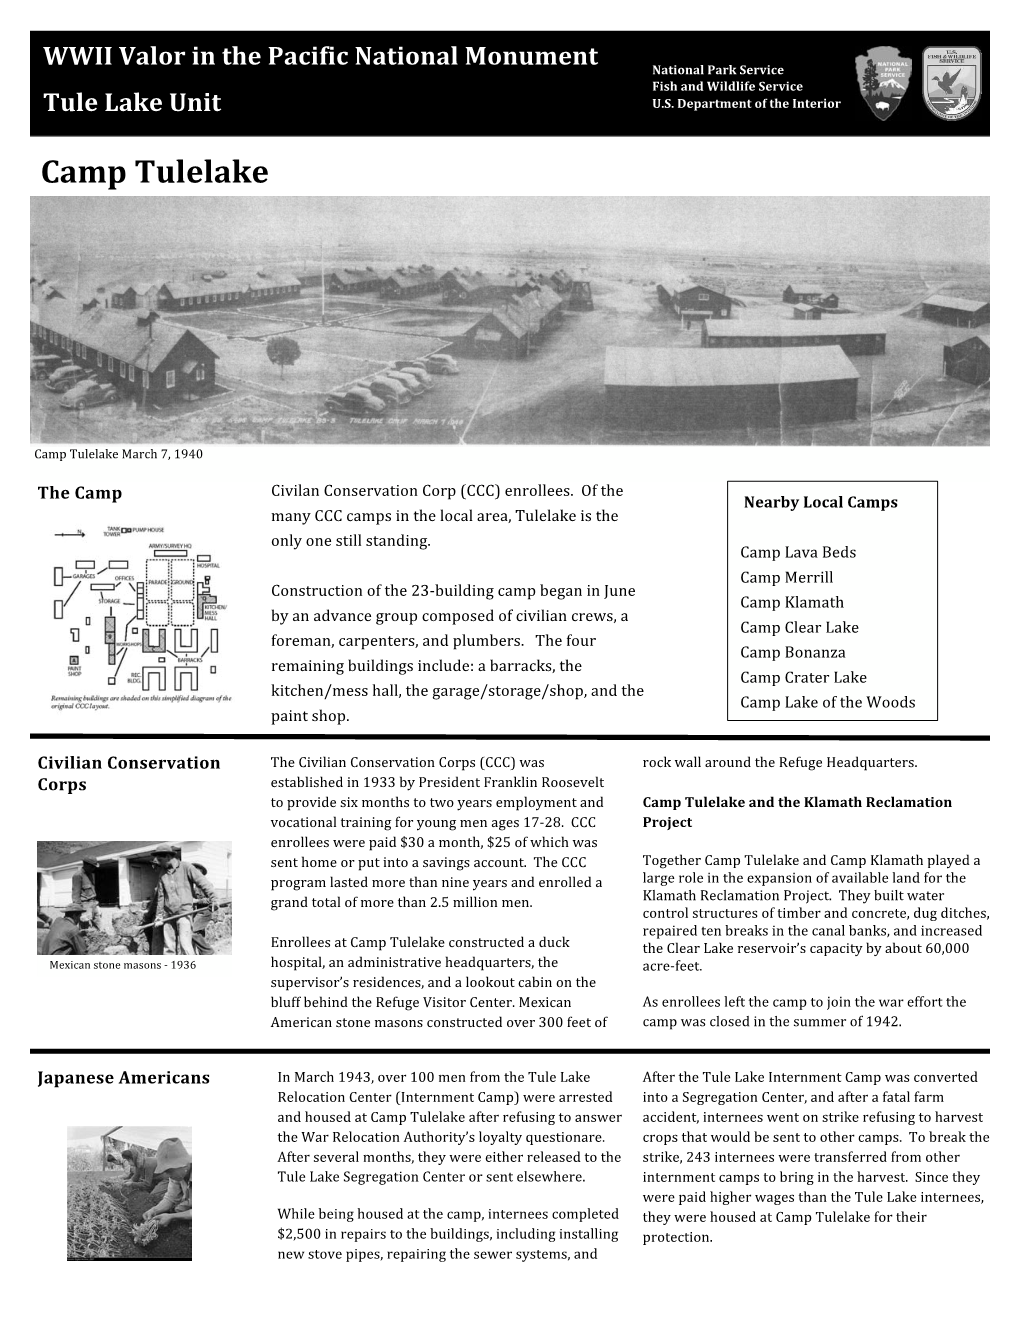 Camp Tulelake